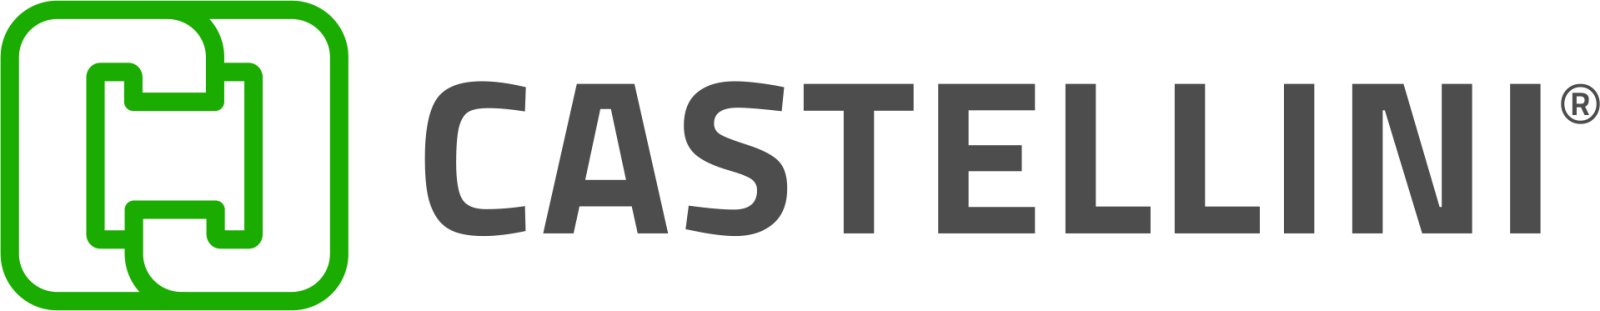 Logo Castellini Officine Meccaniche srl